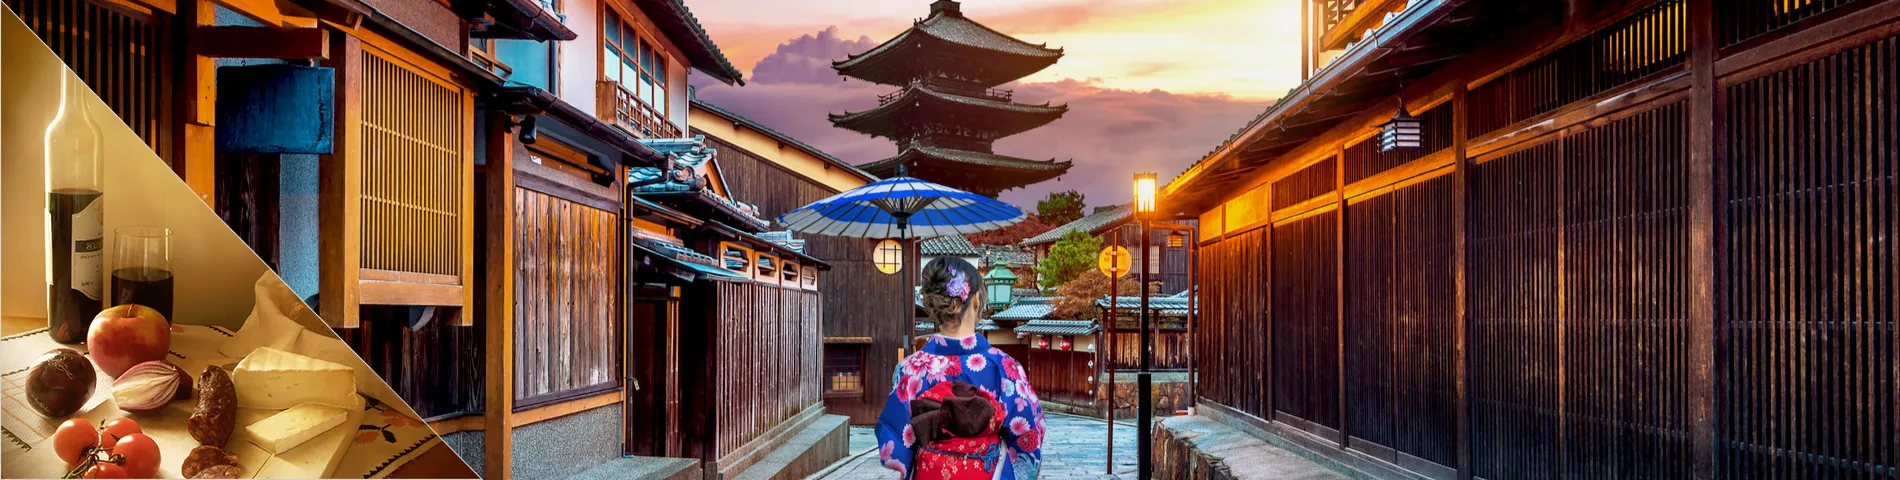 Япония - Японский и культура